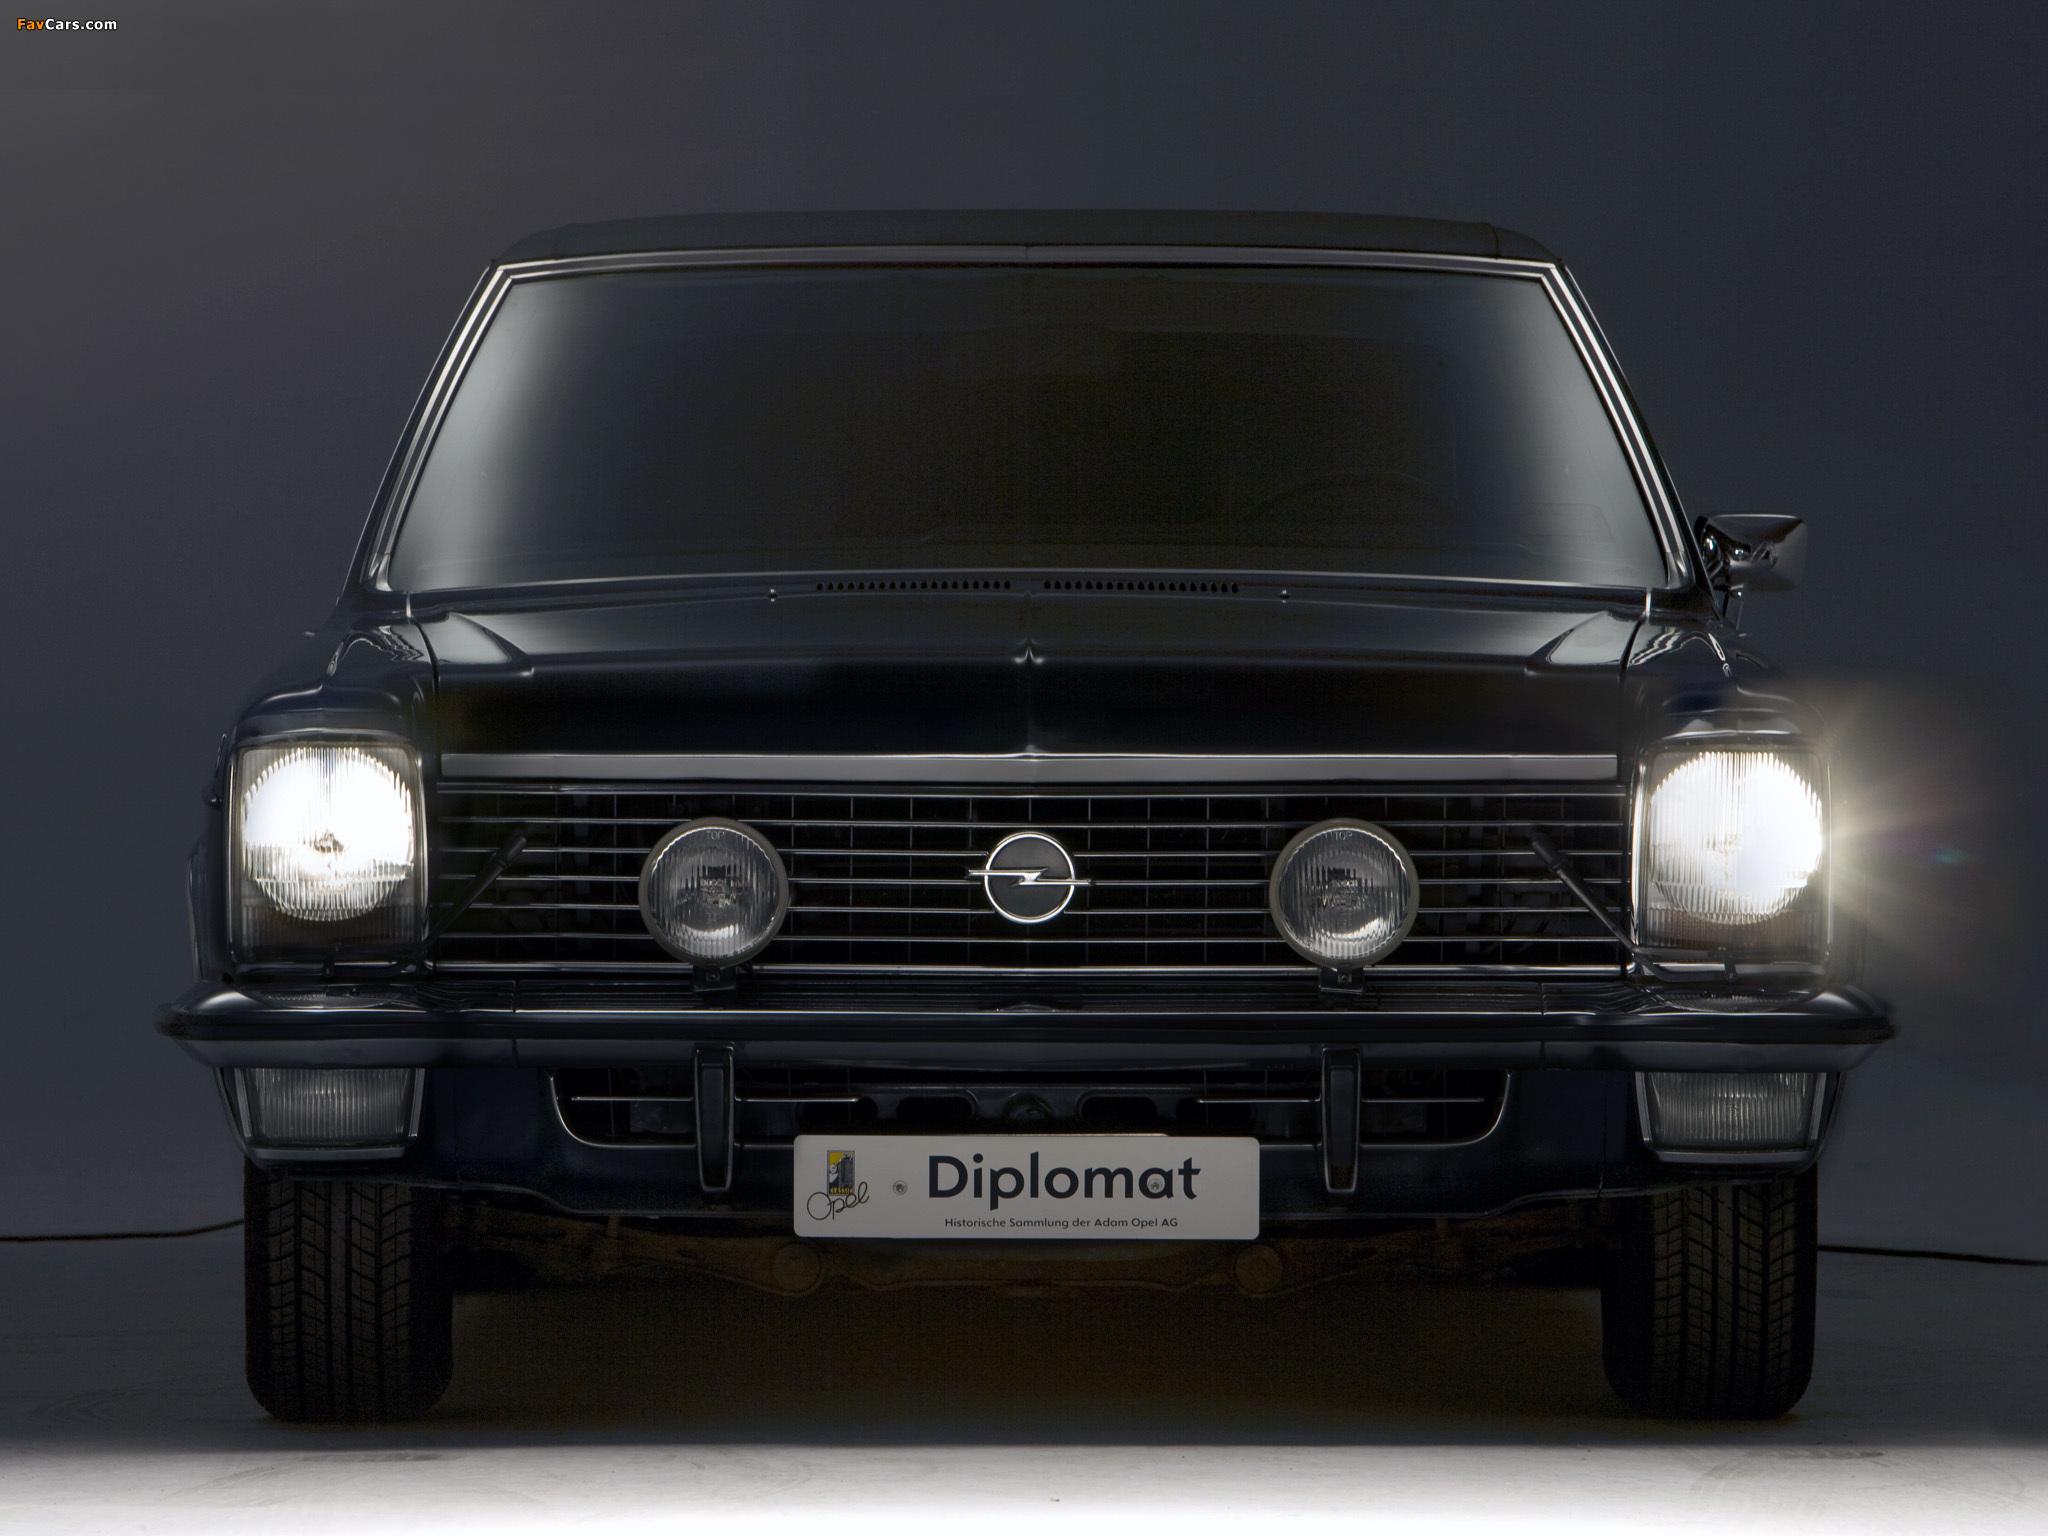 Opel Diplomat wallpaper (2048x1536)